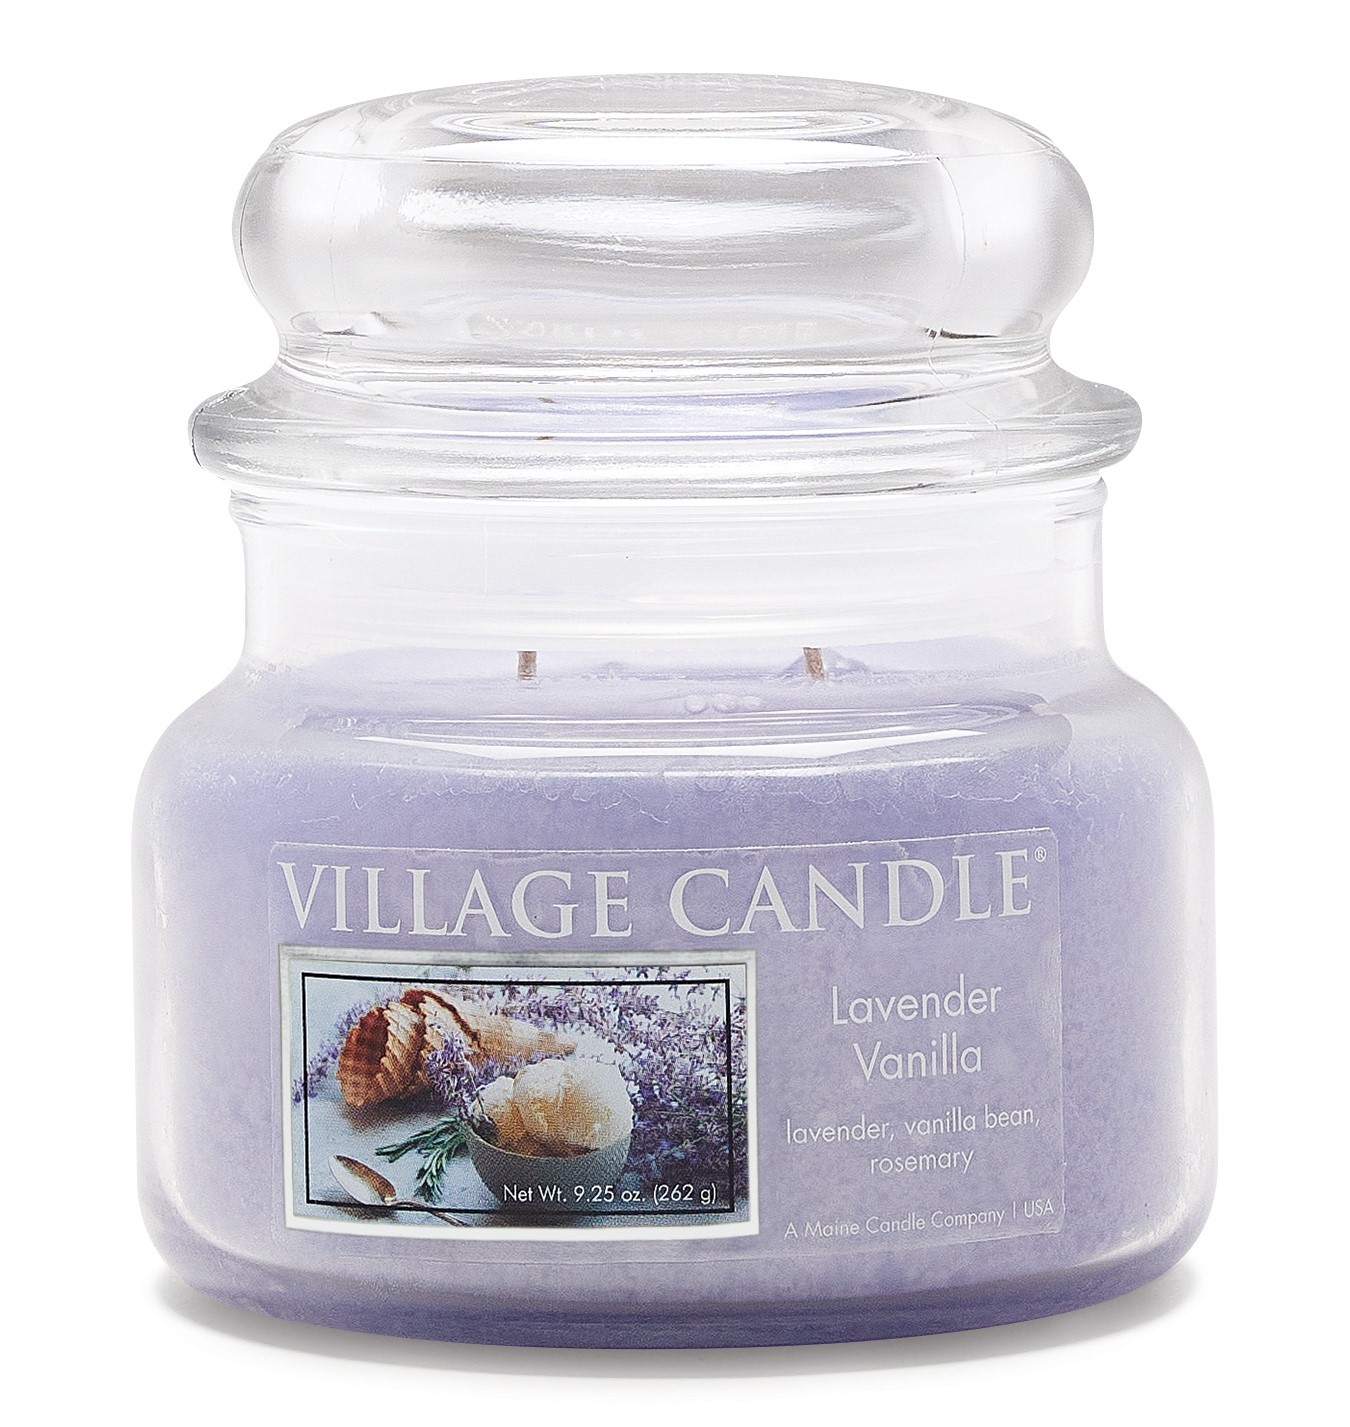 Tradiition Jar Dome Small 262 g Lavender Vanilla